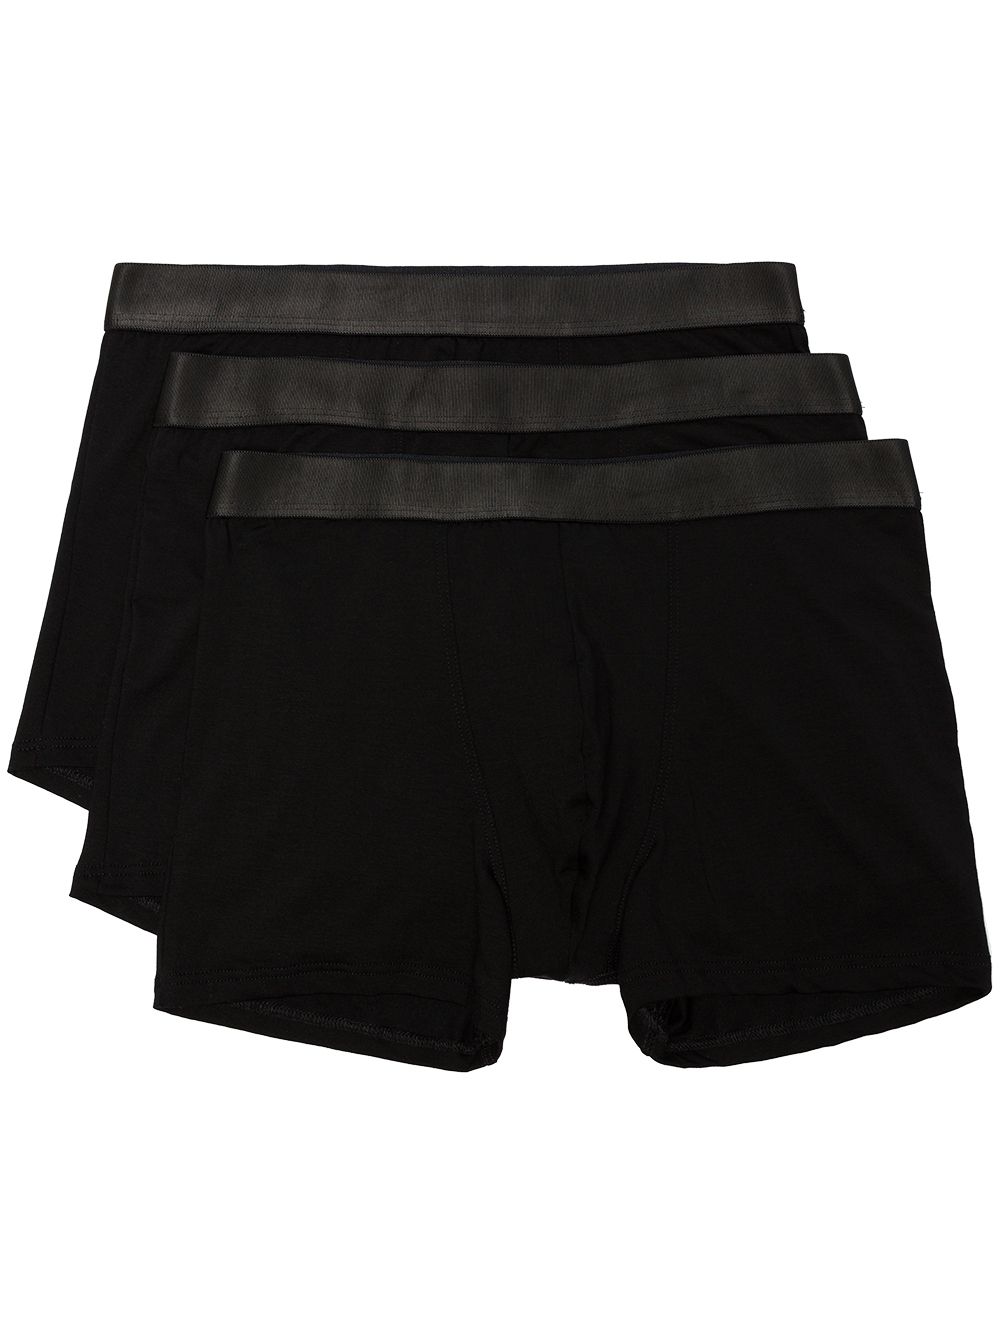 CDLP 3 pack logo waistband boxer briefs - Black